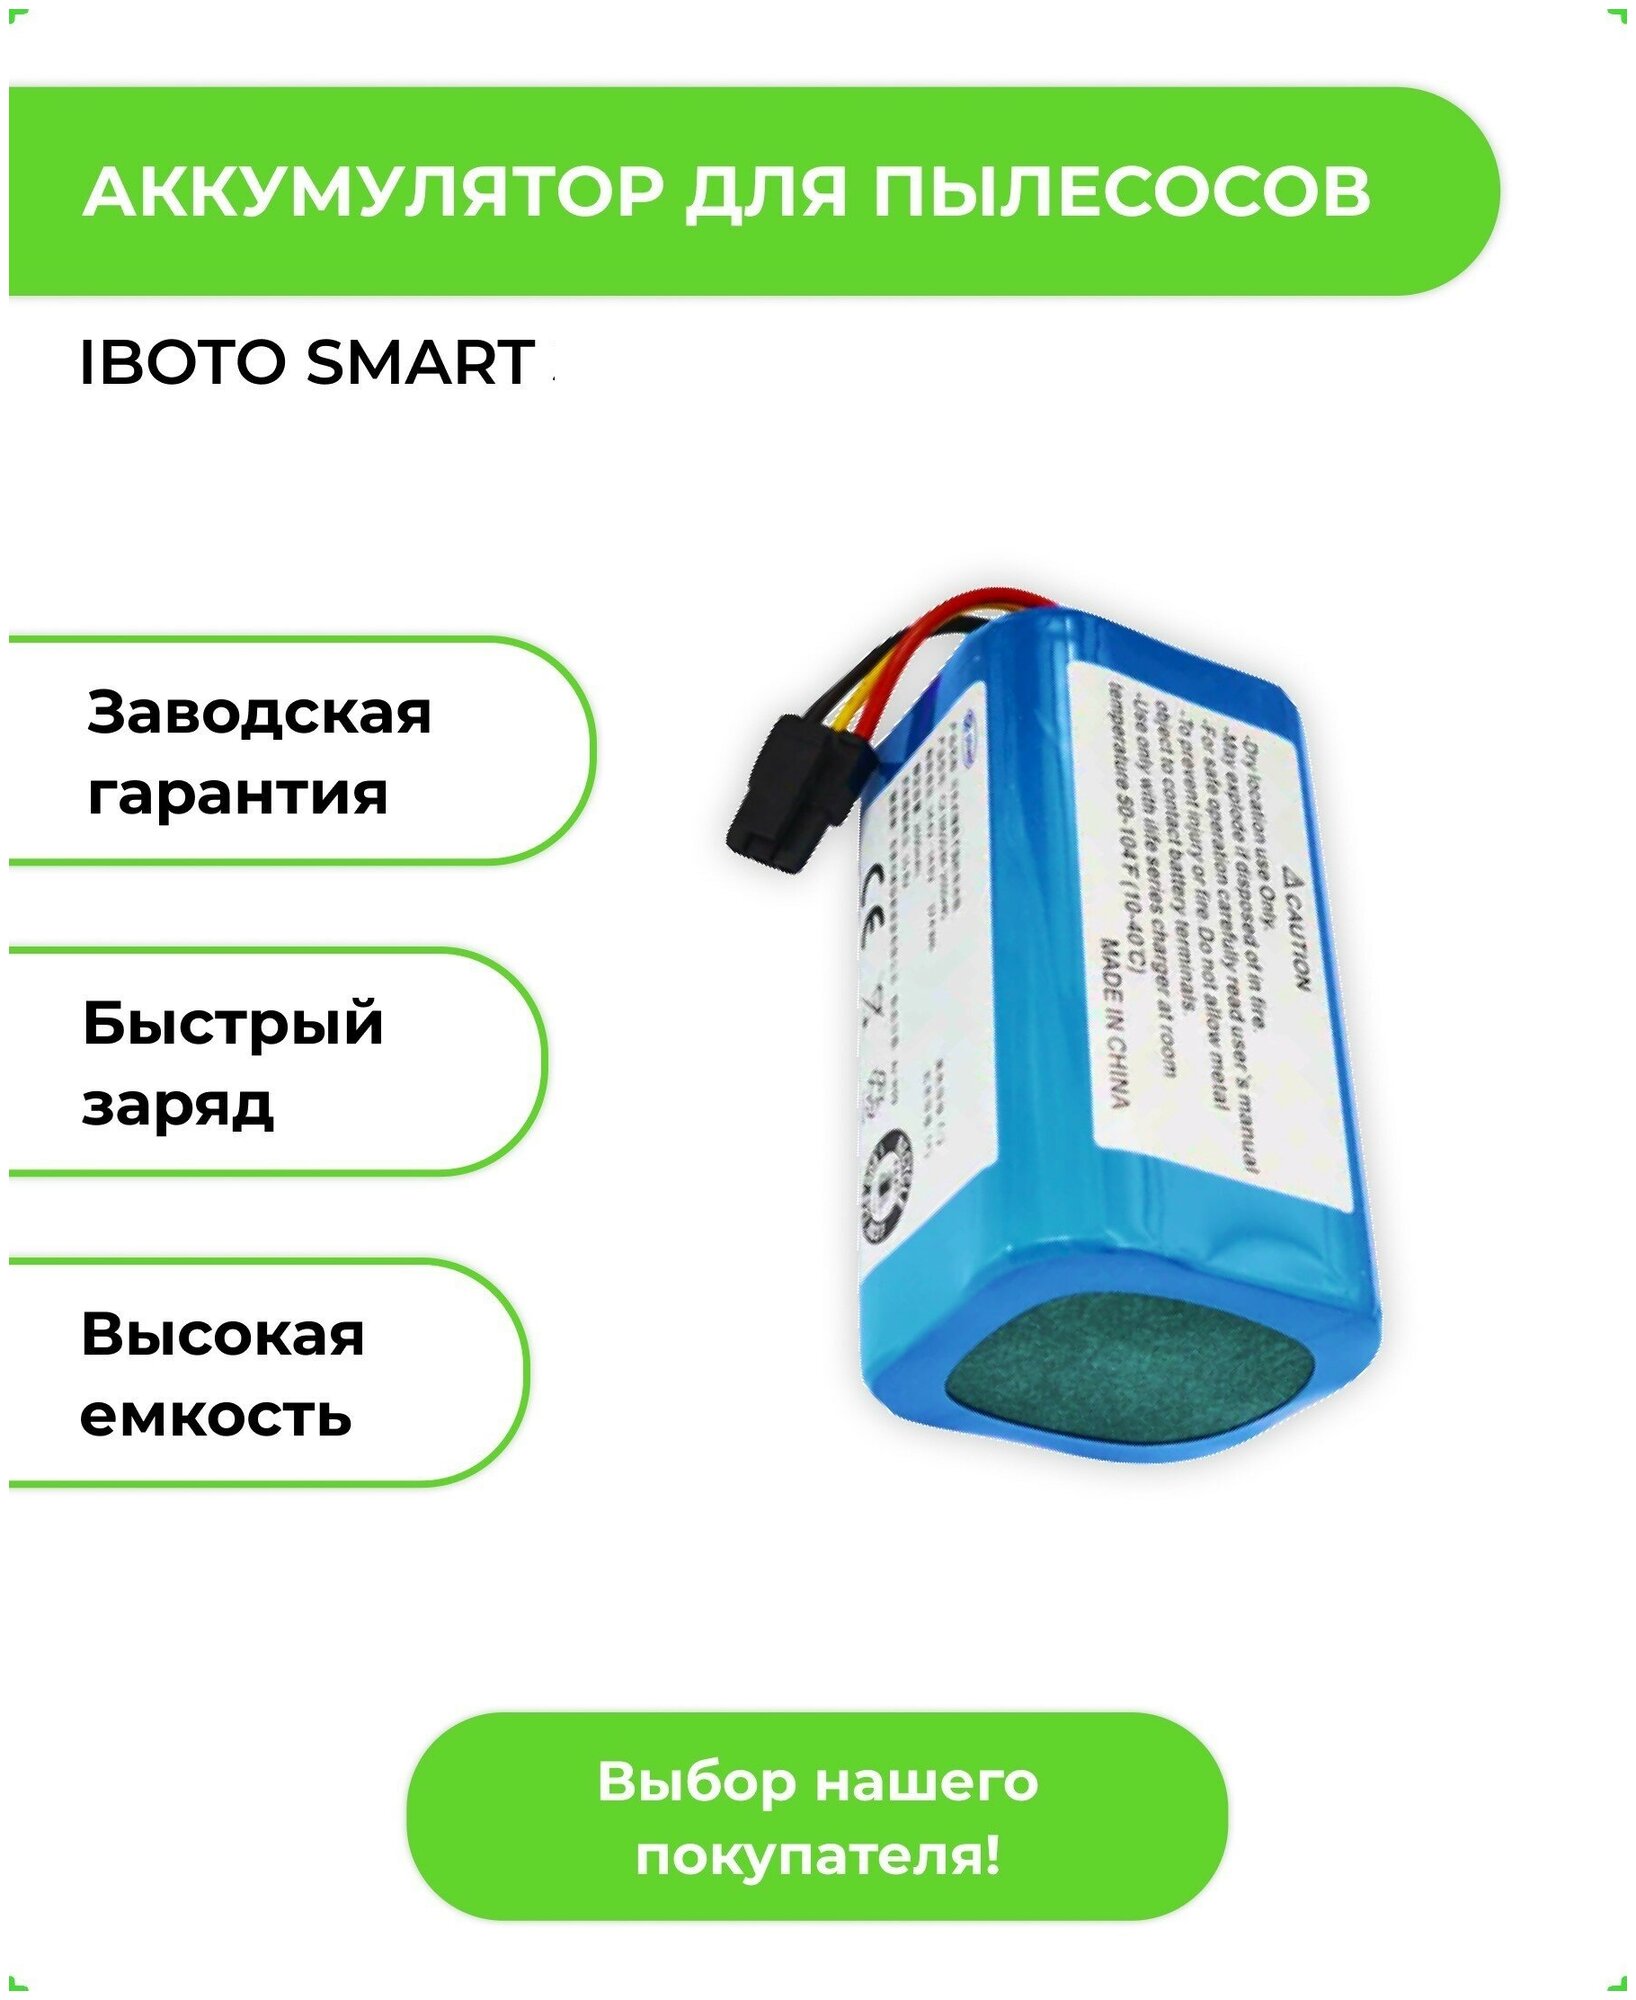 Аккумулятор ABC для робота-пылесоса iBoto Smart V720GW Aqua, Haier / 2600mAh